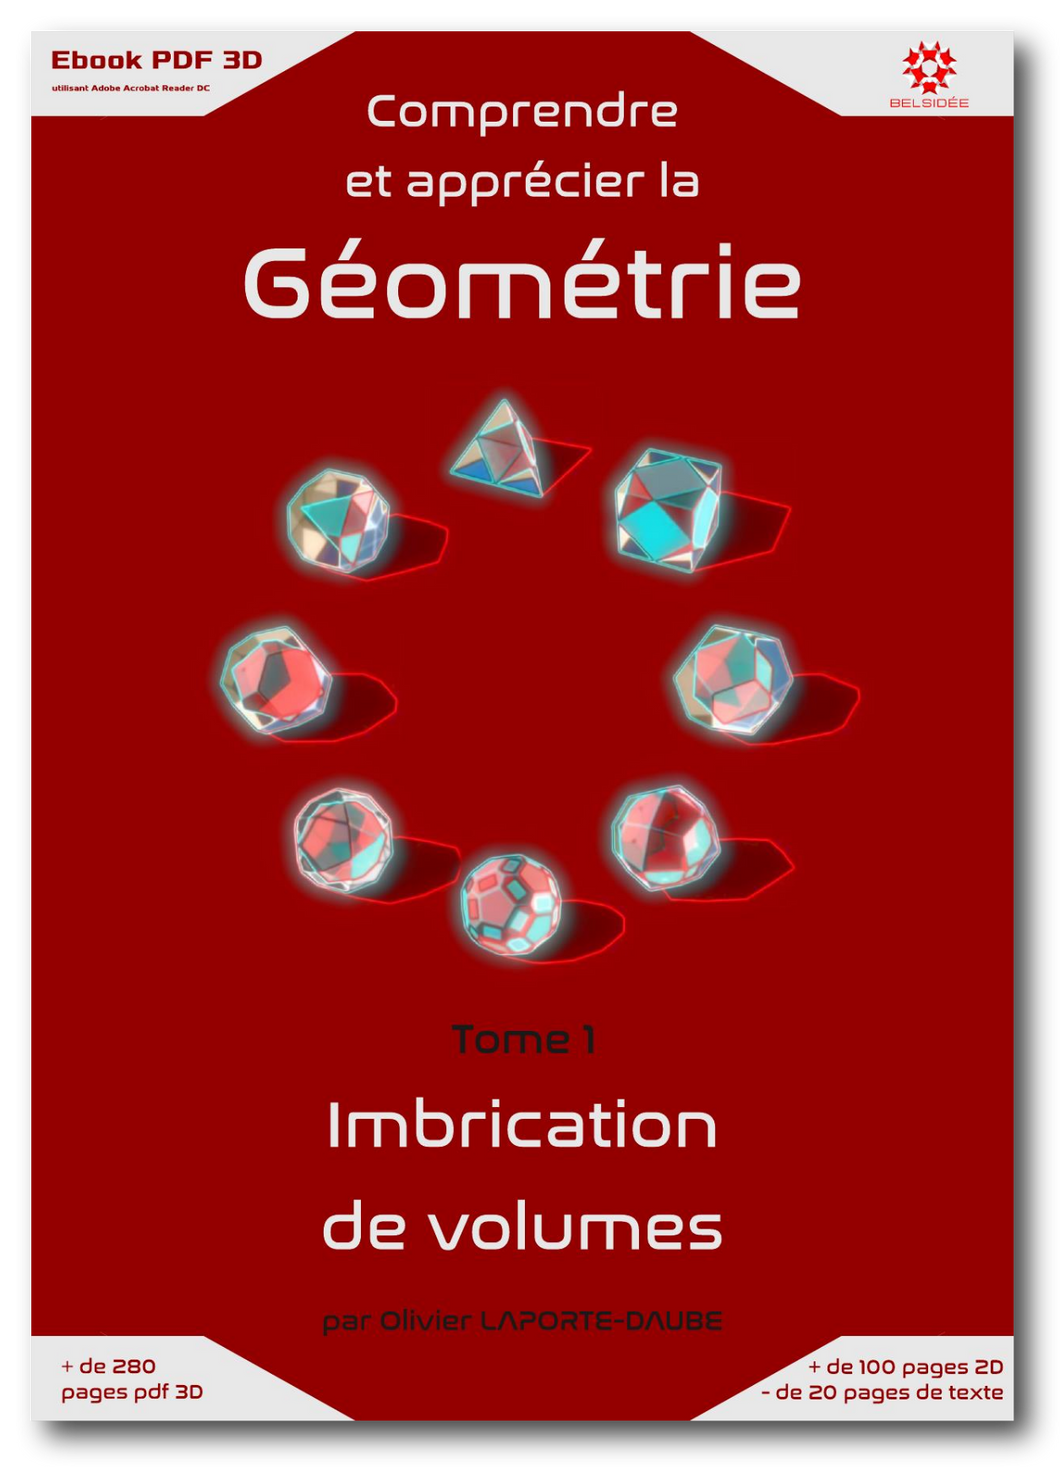 Ebook pdf 3D Comprendre et apprécier la géométrie - Tome 1 - Imbrication de volumes